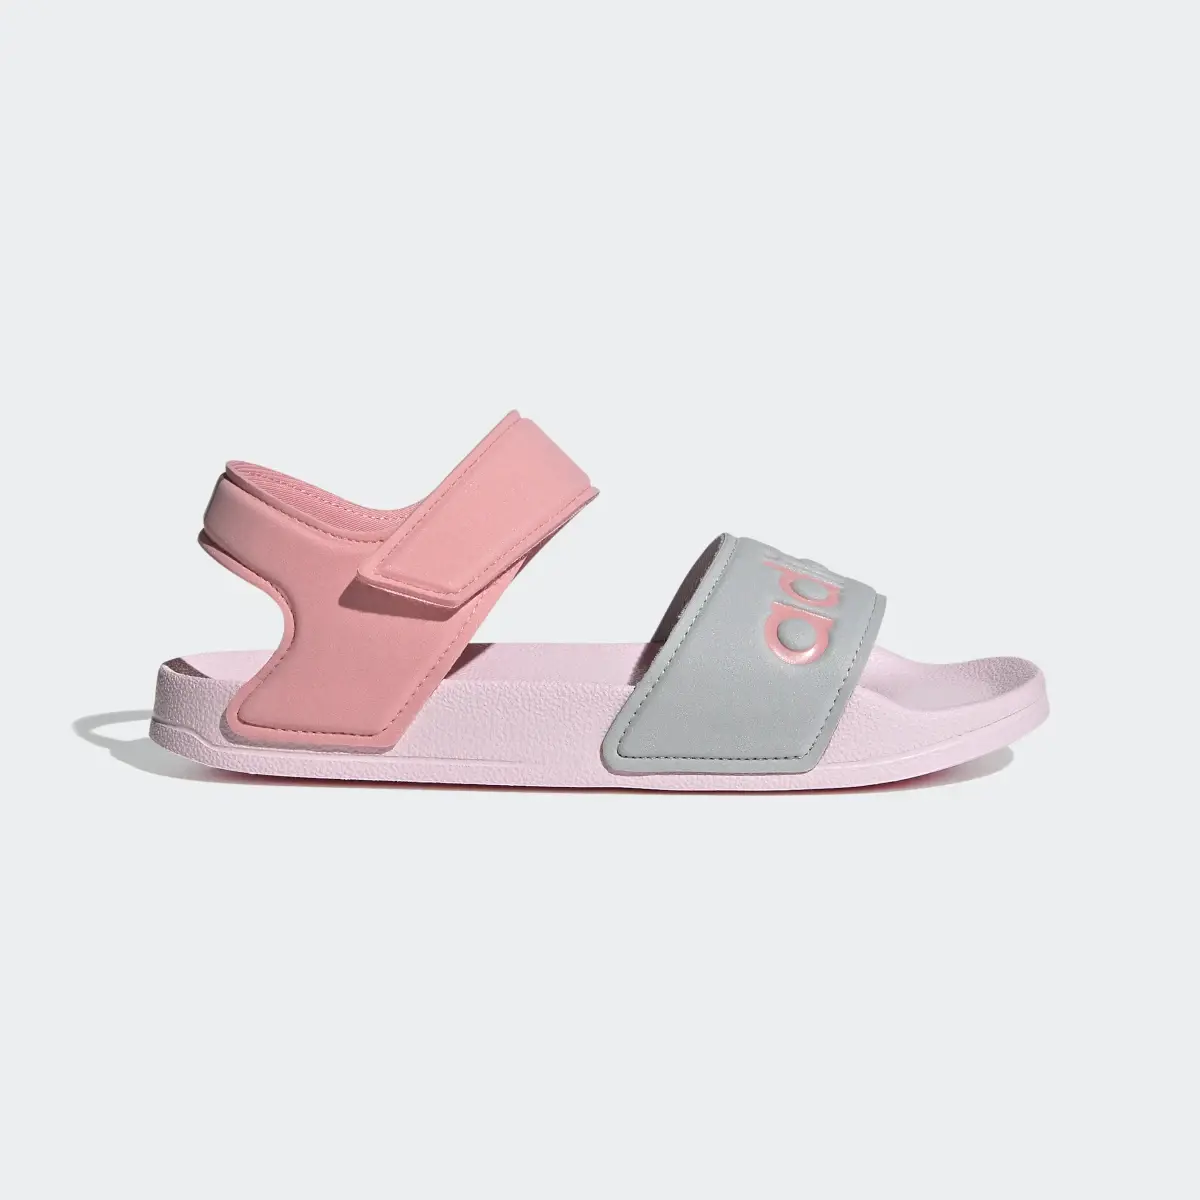 Adidas adilette Sandals. 2